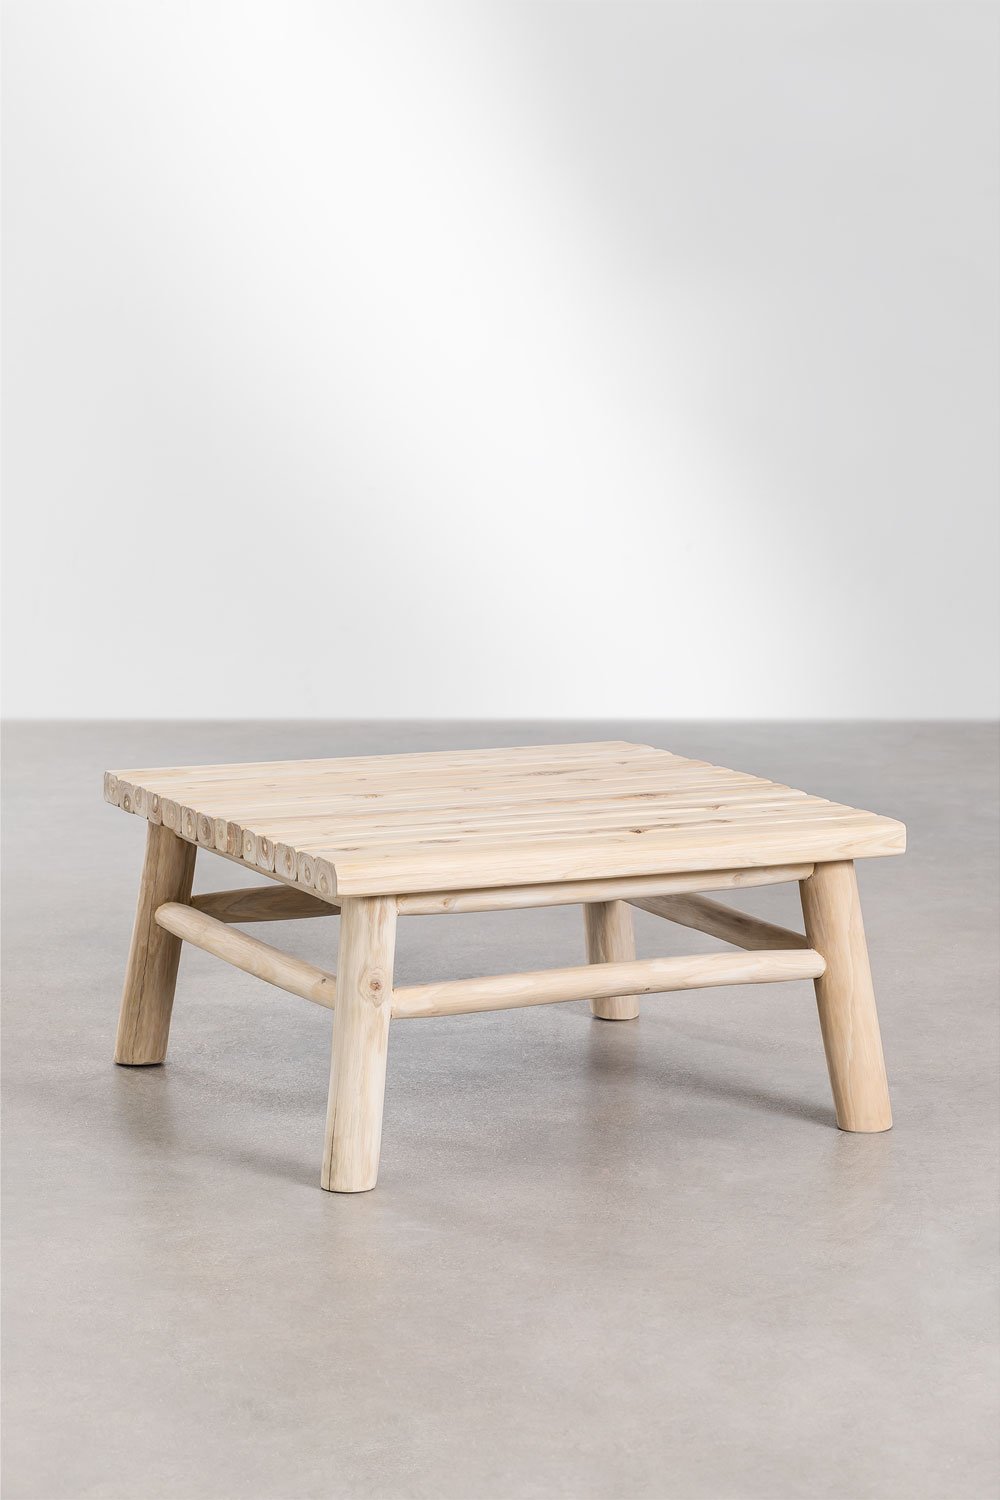 Kwadratowy stolik kawowy do ogrodu z drewna tekowego (80x80 cm) Narel, obrazek w galerii 1